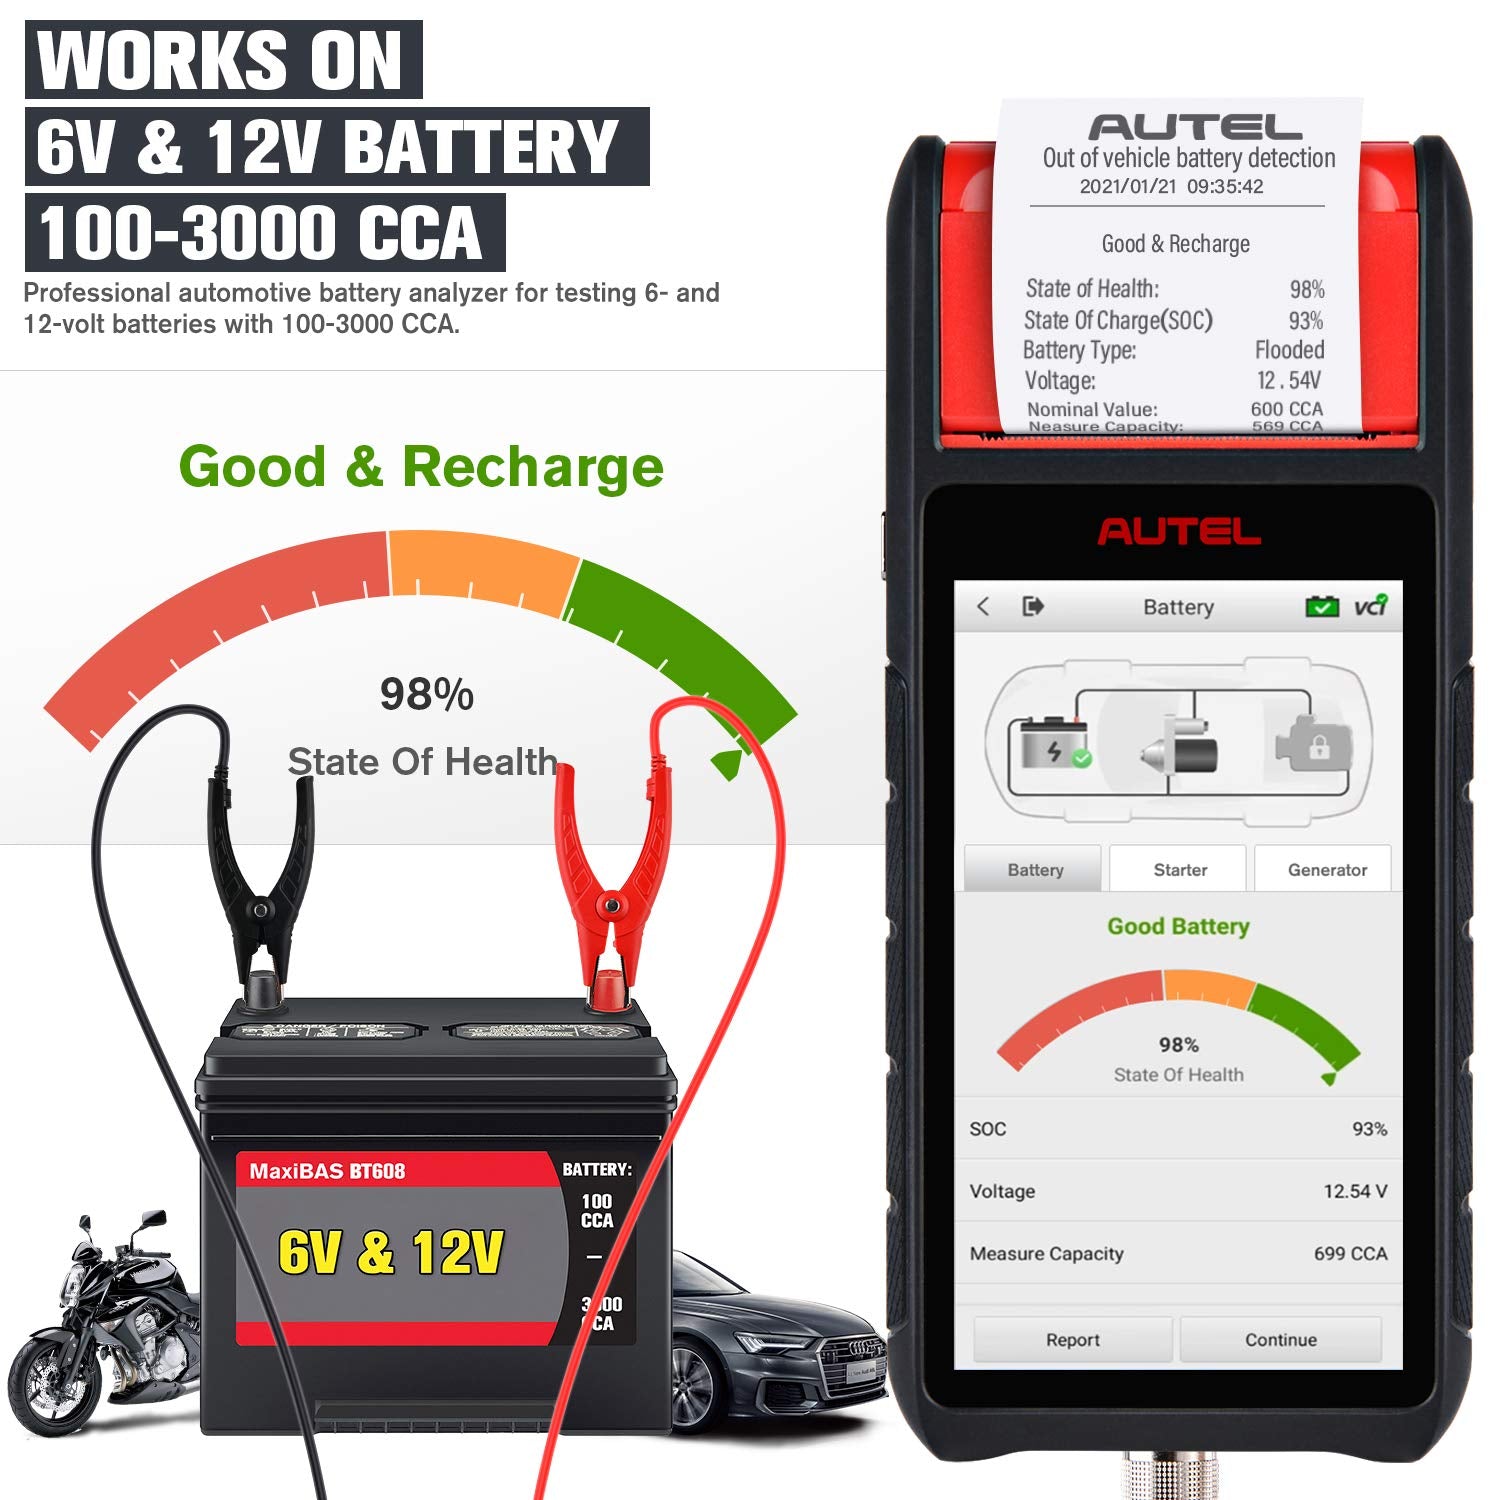 Autel MaxiBAS BT608 funciona con batería de 6 V y 12 V 100-300 cca